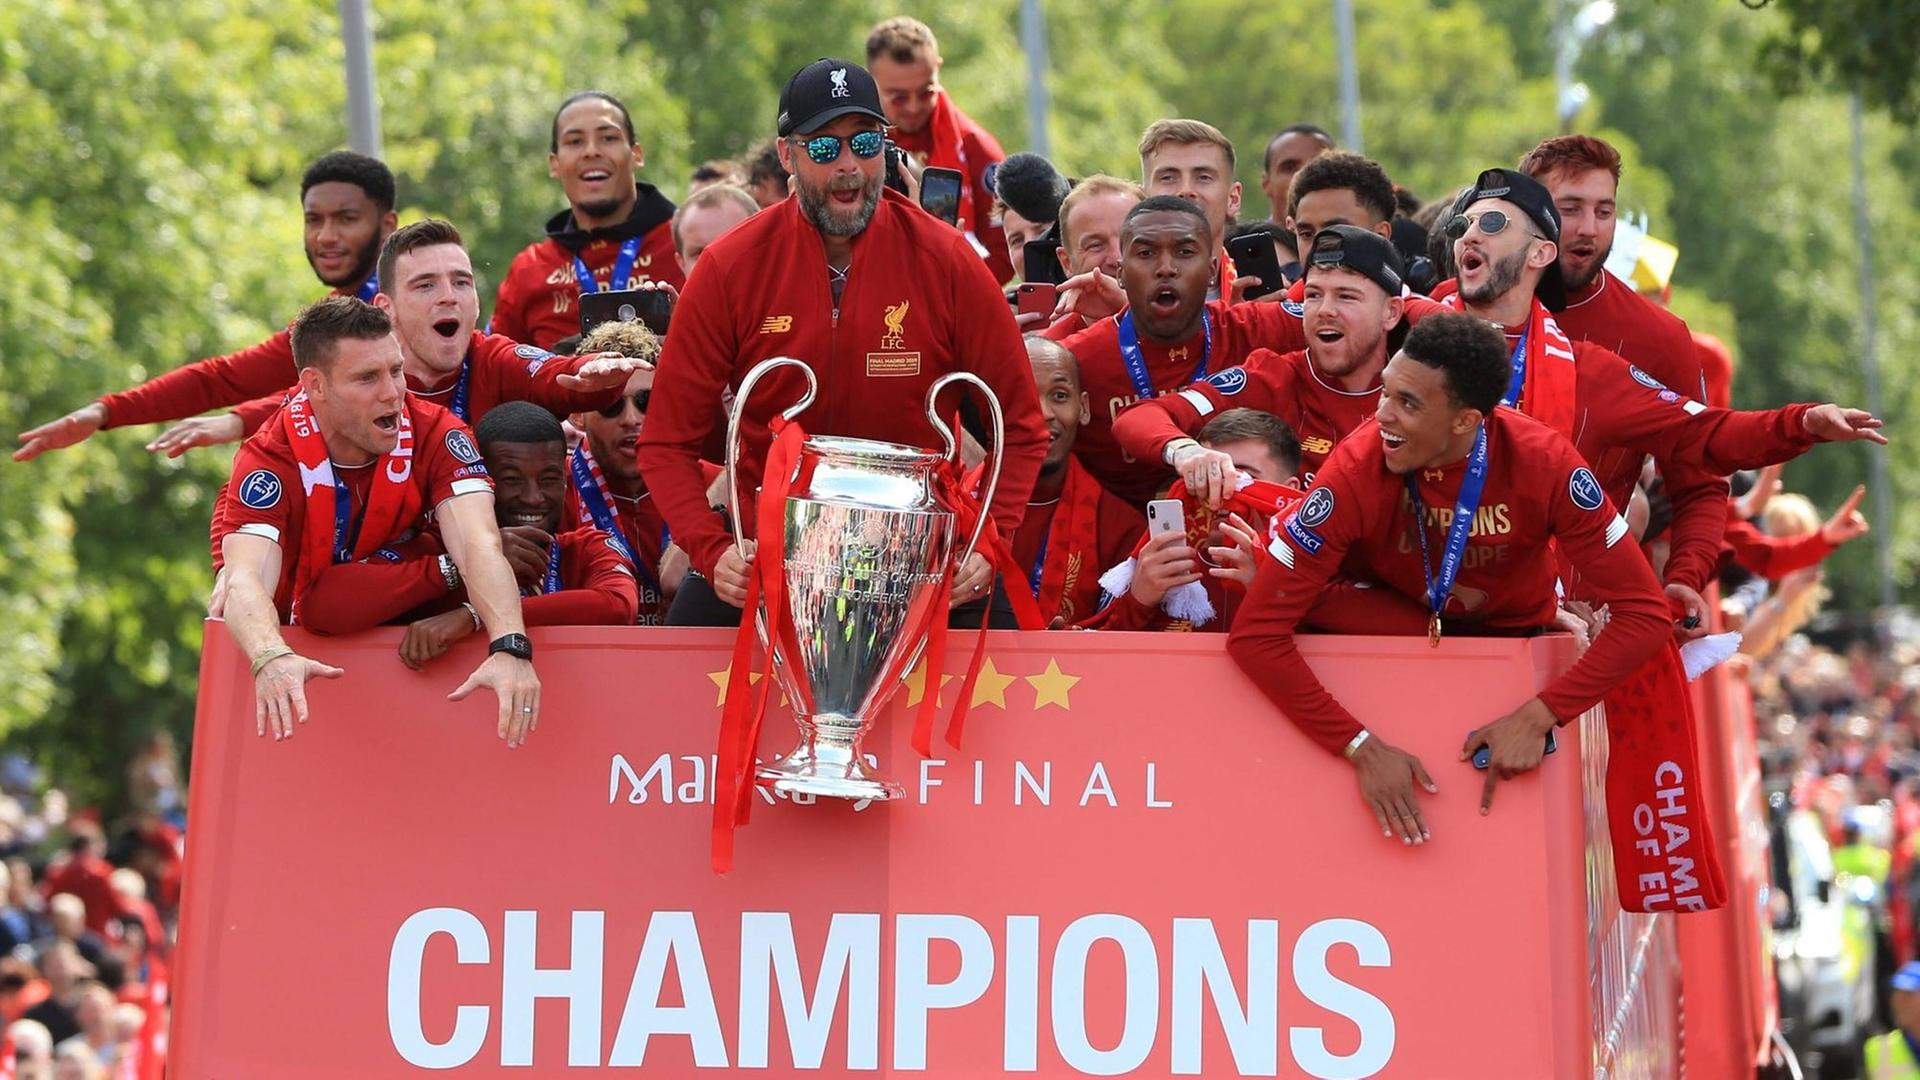 Trainer Jürgen Klopp feiert mit Spielern und Fans den Sieg der Champions League. Klop hält den Pokal in den Händen, die Spieler jubeln.